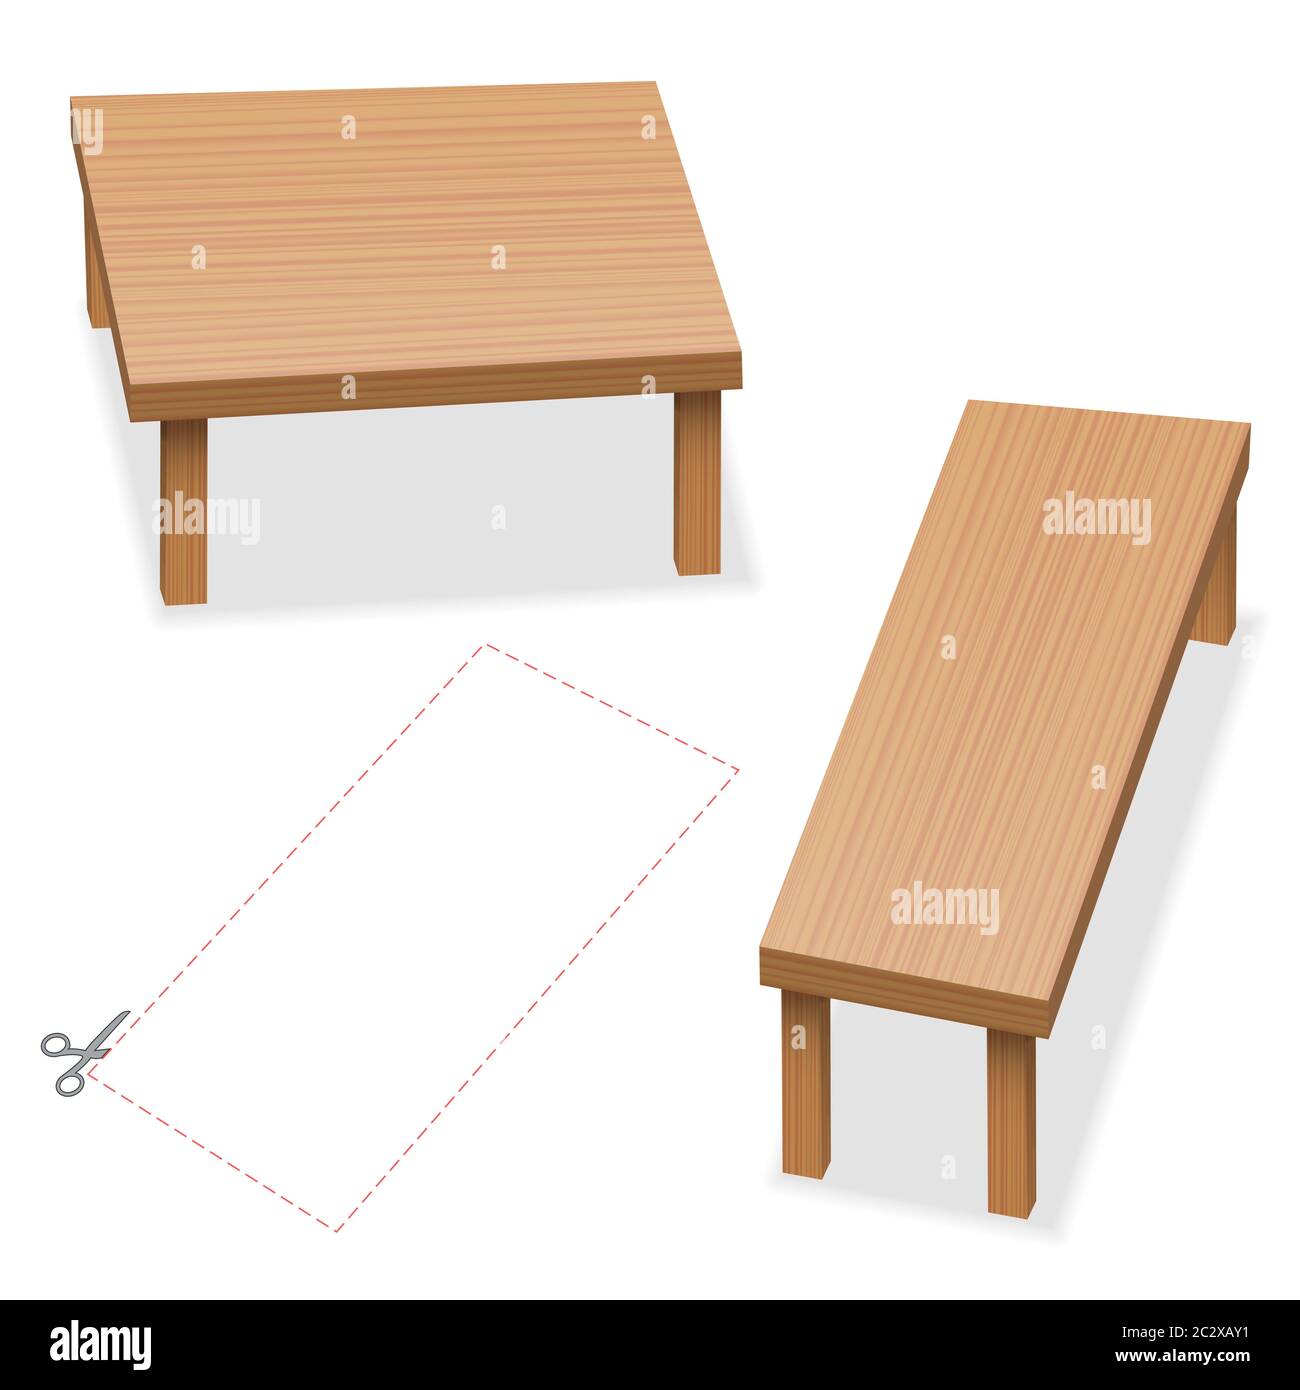 Illusione ottica, due tavoli con piano portapaziente delle stesse dimensioni. Ritagliare il rettangolo rosso, confrontare, controllare e domandarsi - illustrazione su sfondo bianco. Foto Stock